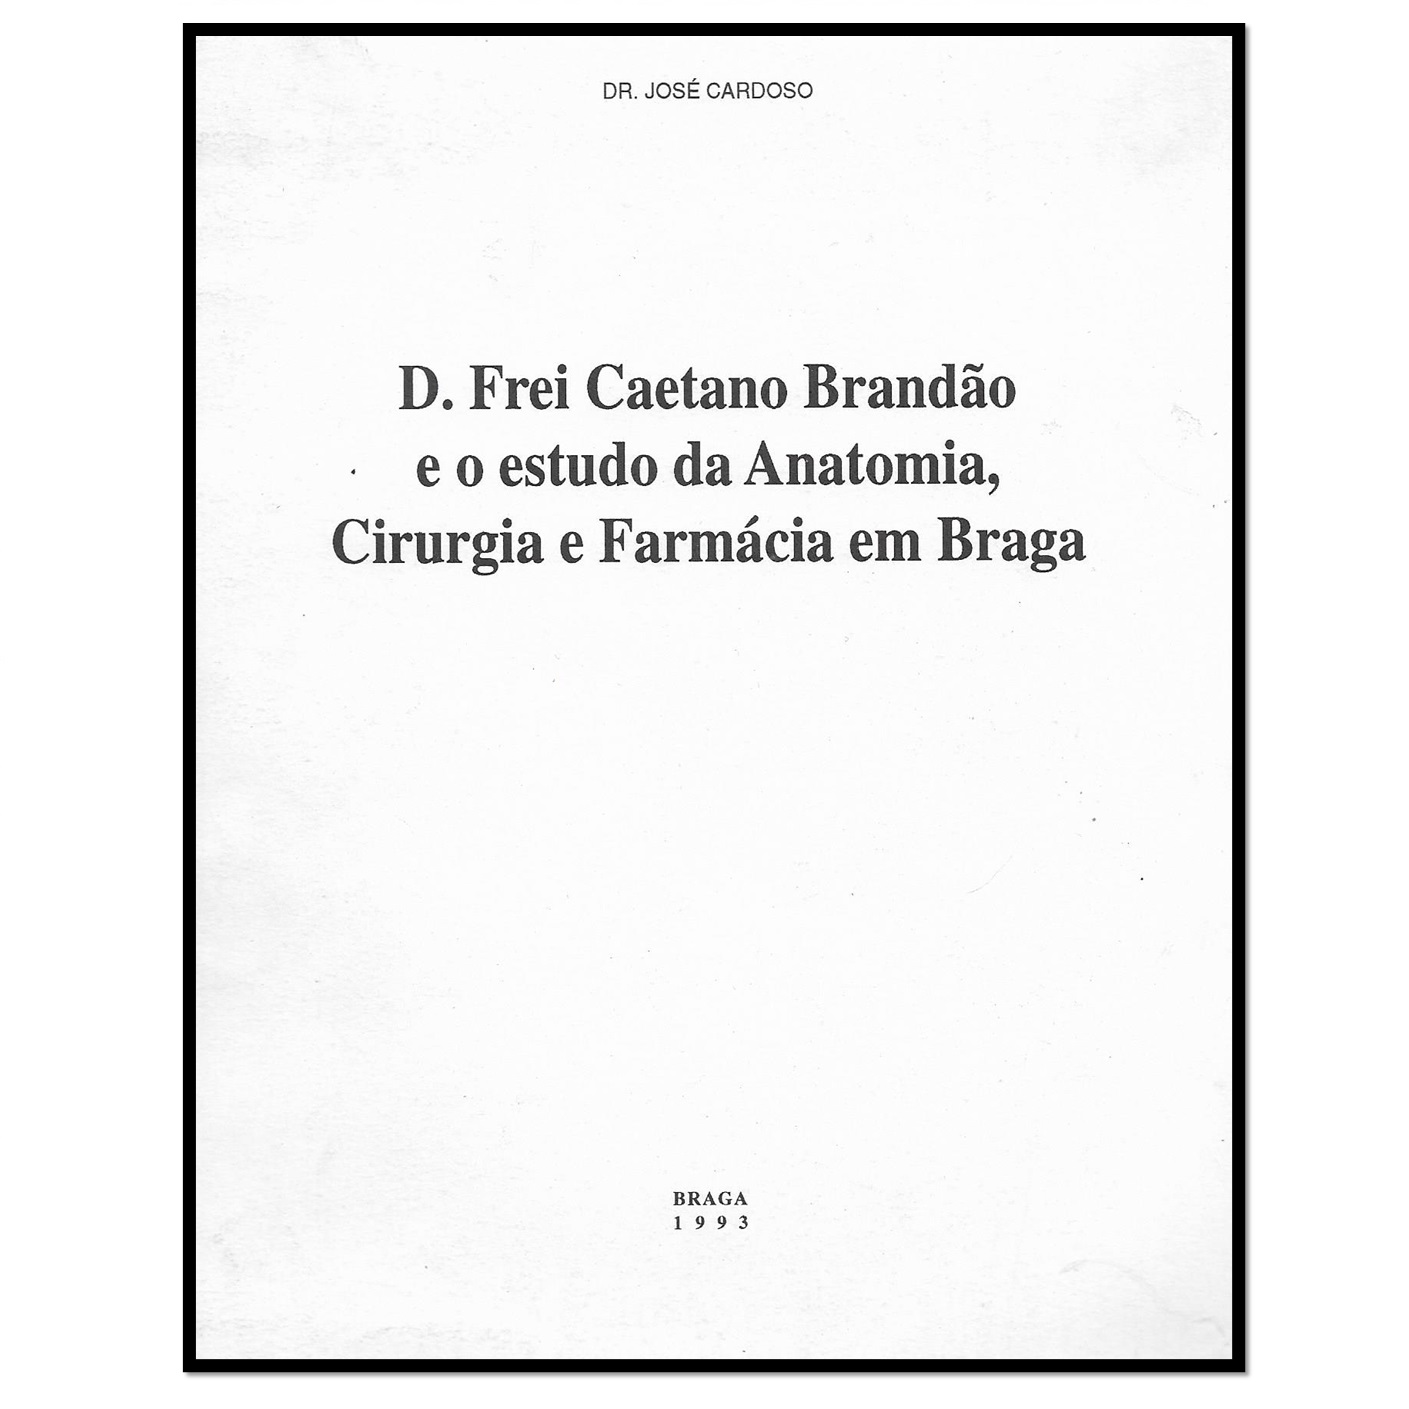 D. Frei Caetano Brandão e o estudo da Anatomia, Cirurgia e Farmácia em Braga